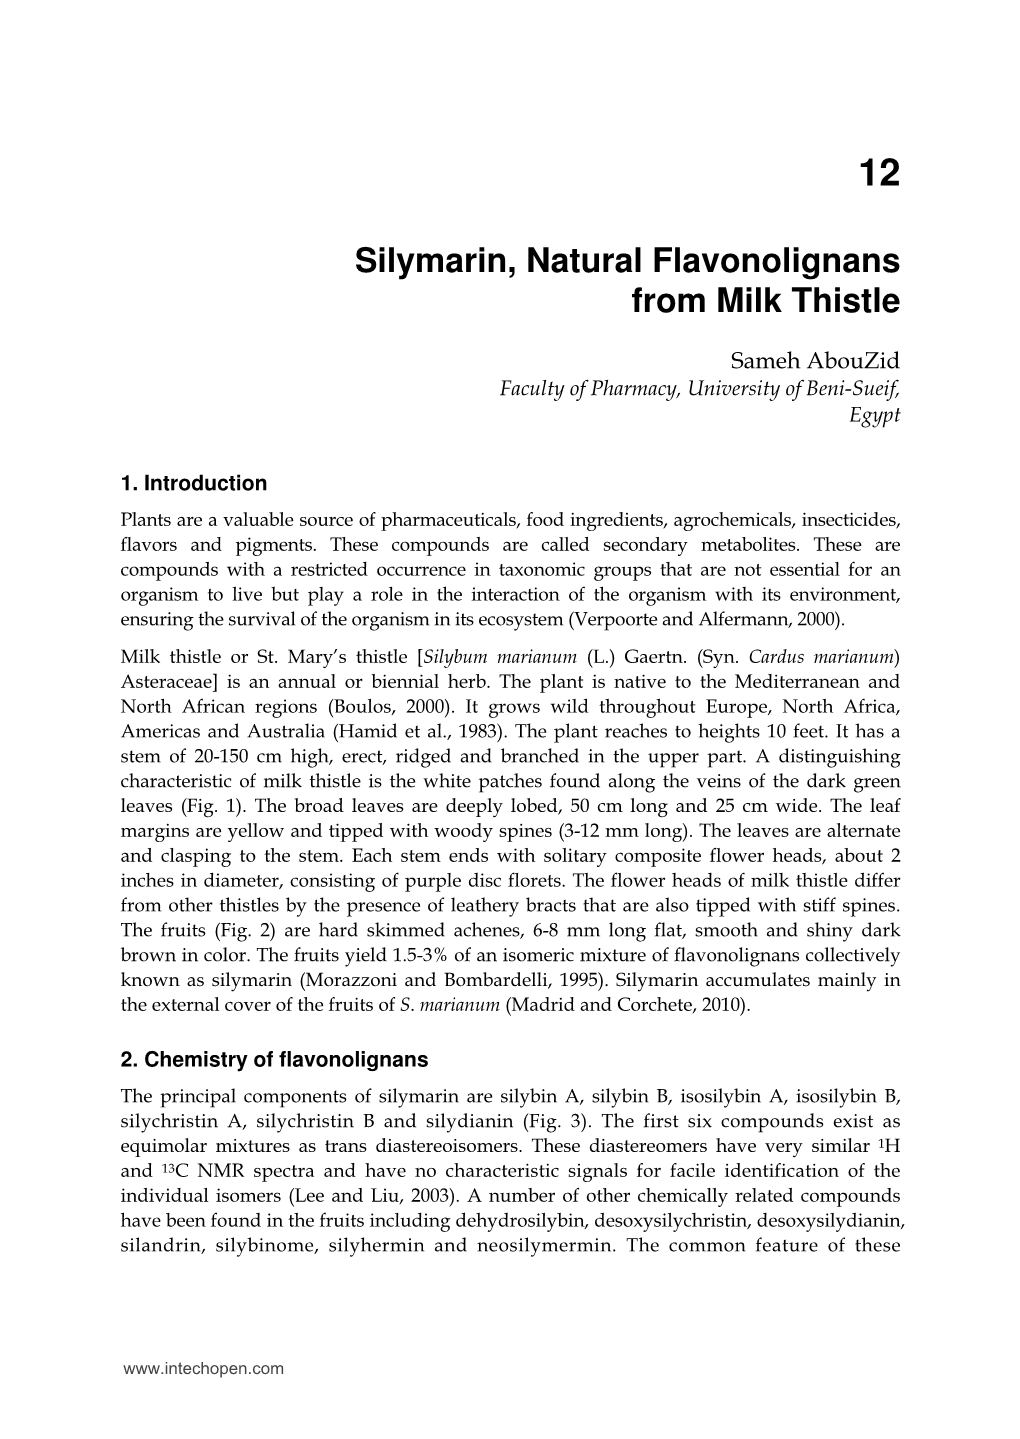 Silymarin, Natural Flavonolignans from Milk Thistle